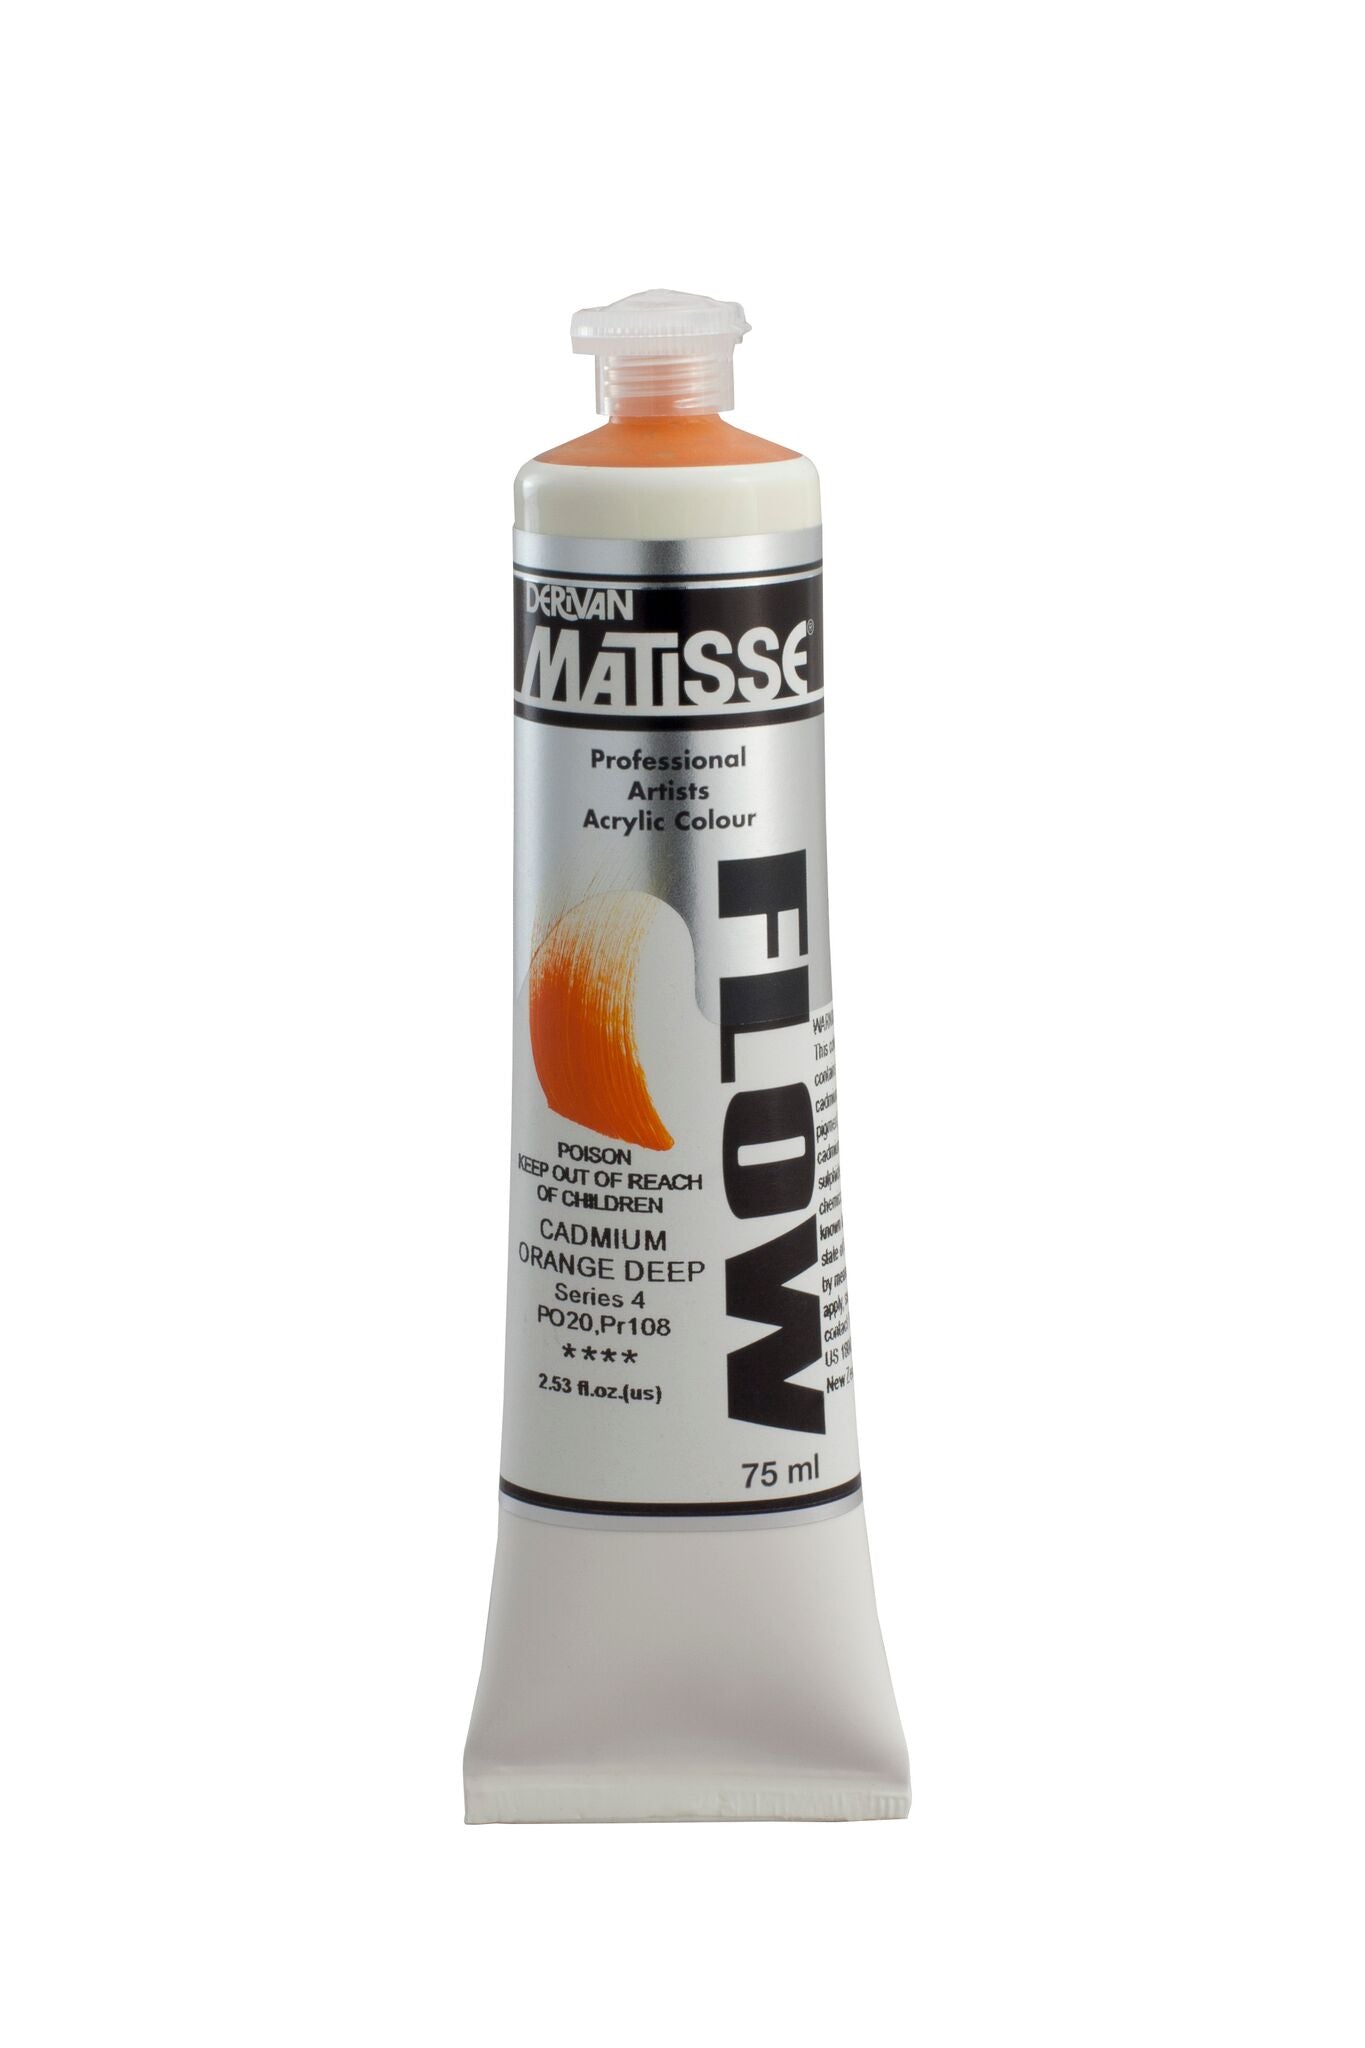 Matisse Flow 75ml Cadmium Orange Deep - theartshop.com.au